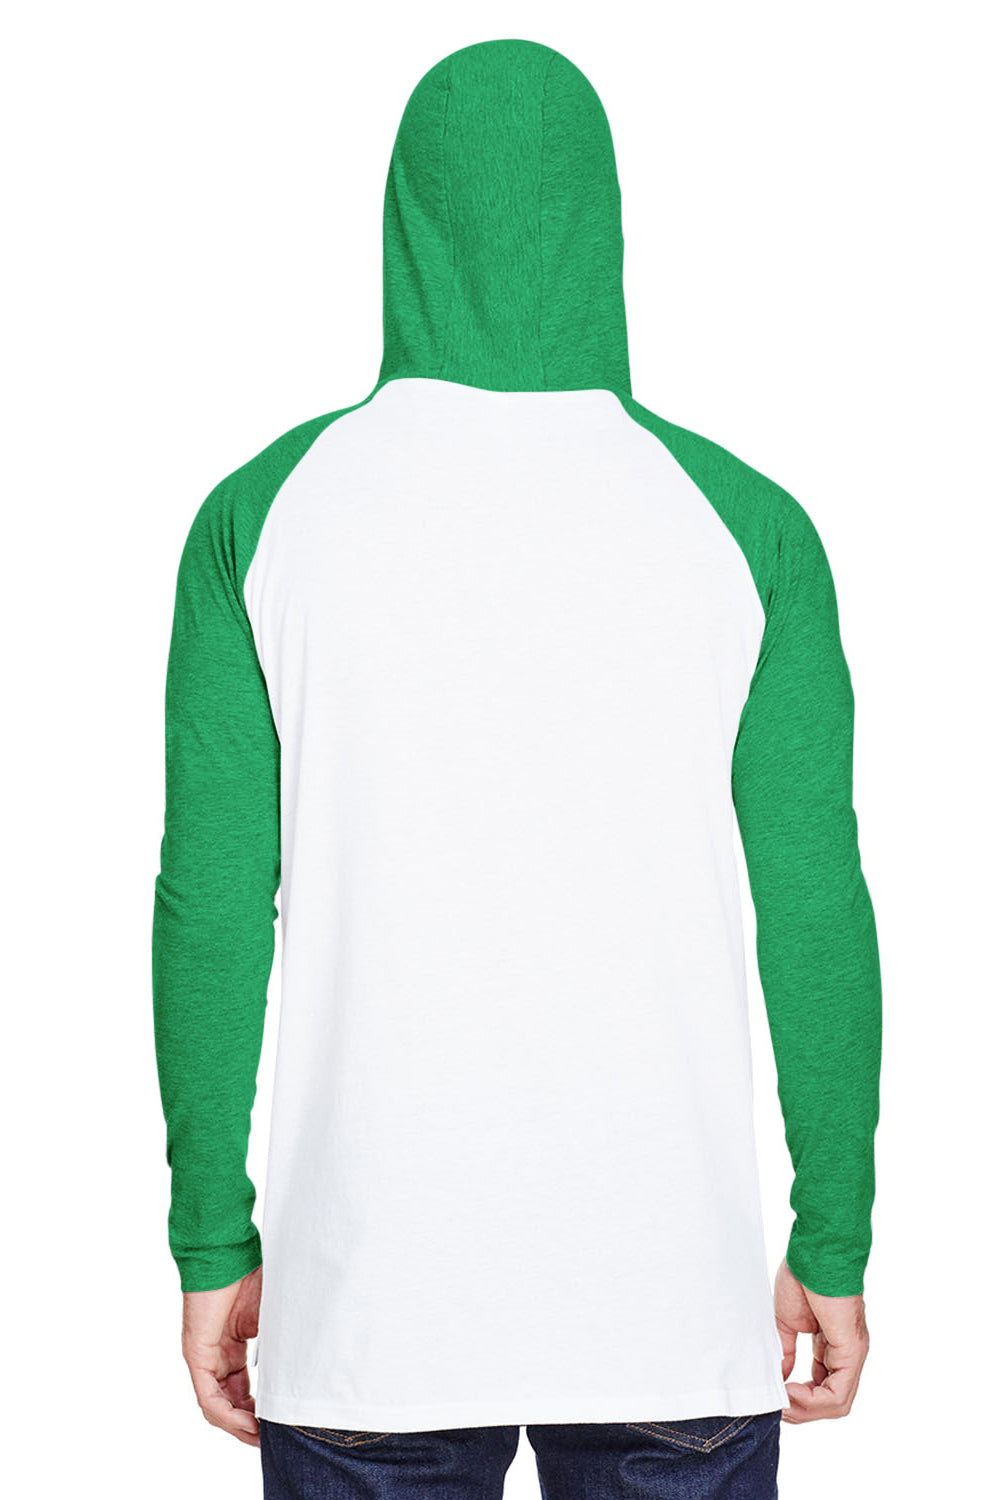 LAT 6917 Mens Fine Jersey Hooded Sweatshirt White/Green Back